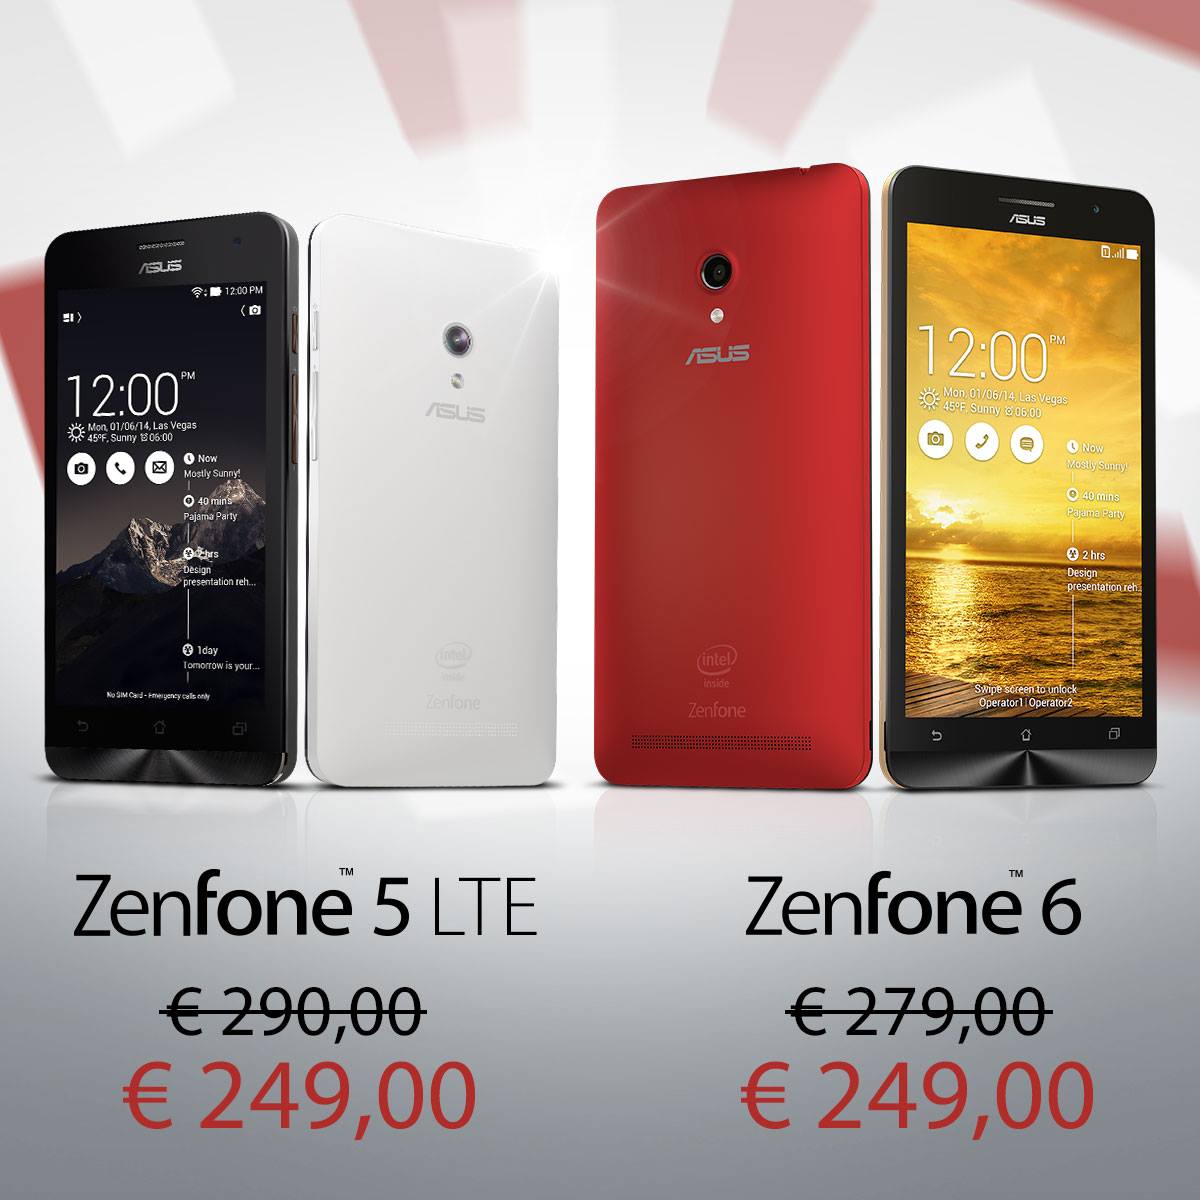 ASUS ci offre Zenfone 5 LTE e Zenfone 6 scontati con accessori a metà prezzo